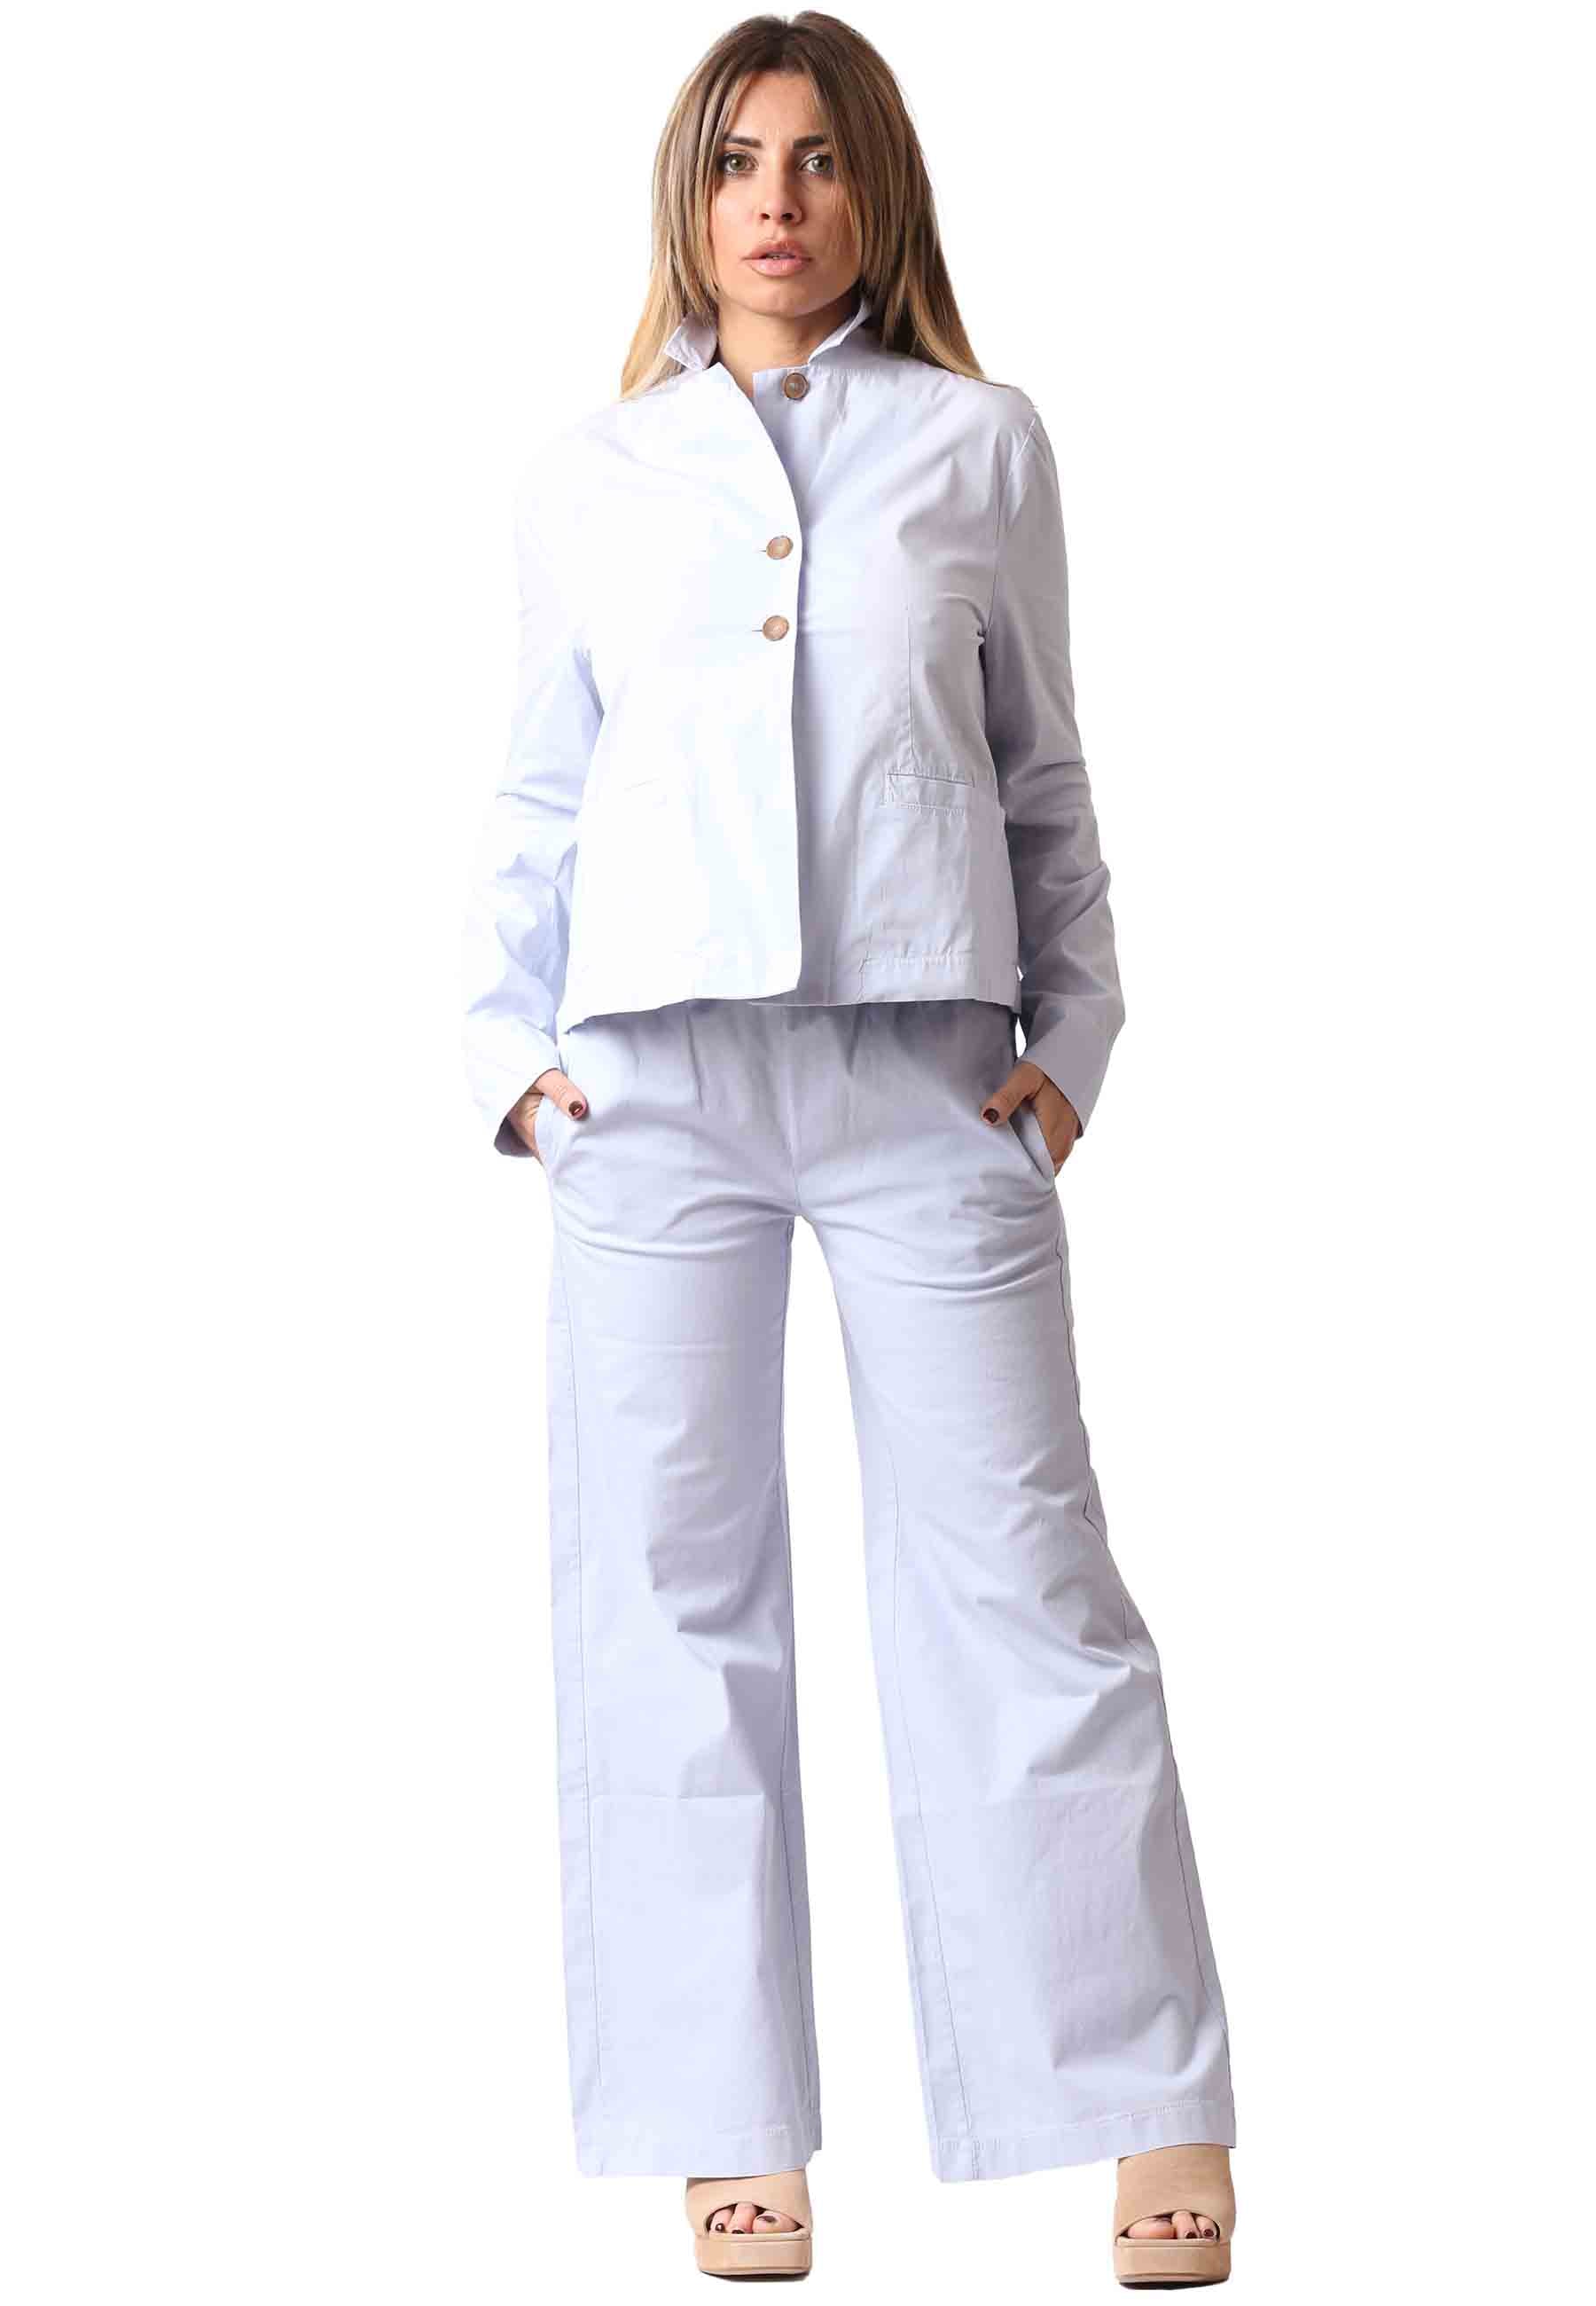 Pantalone donna Palma in cotone azzurro elastico in vita